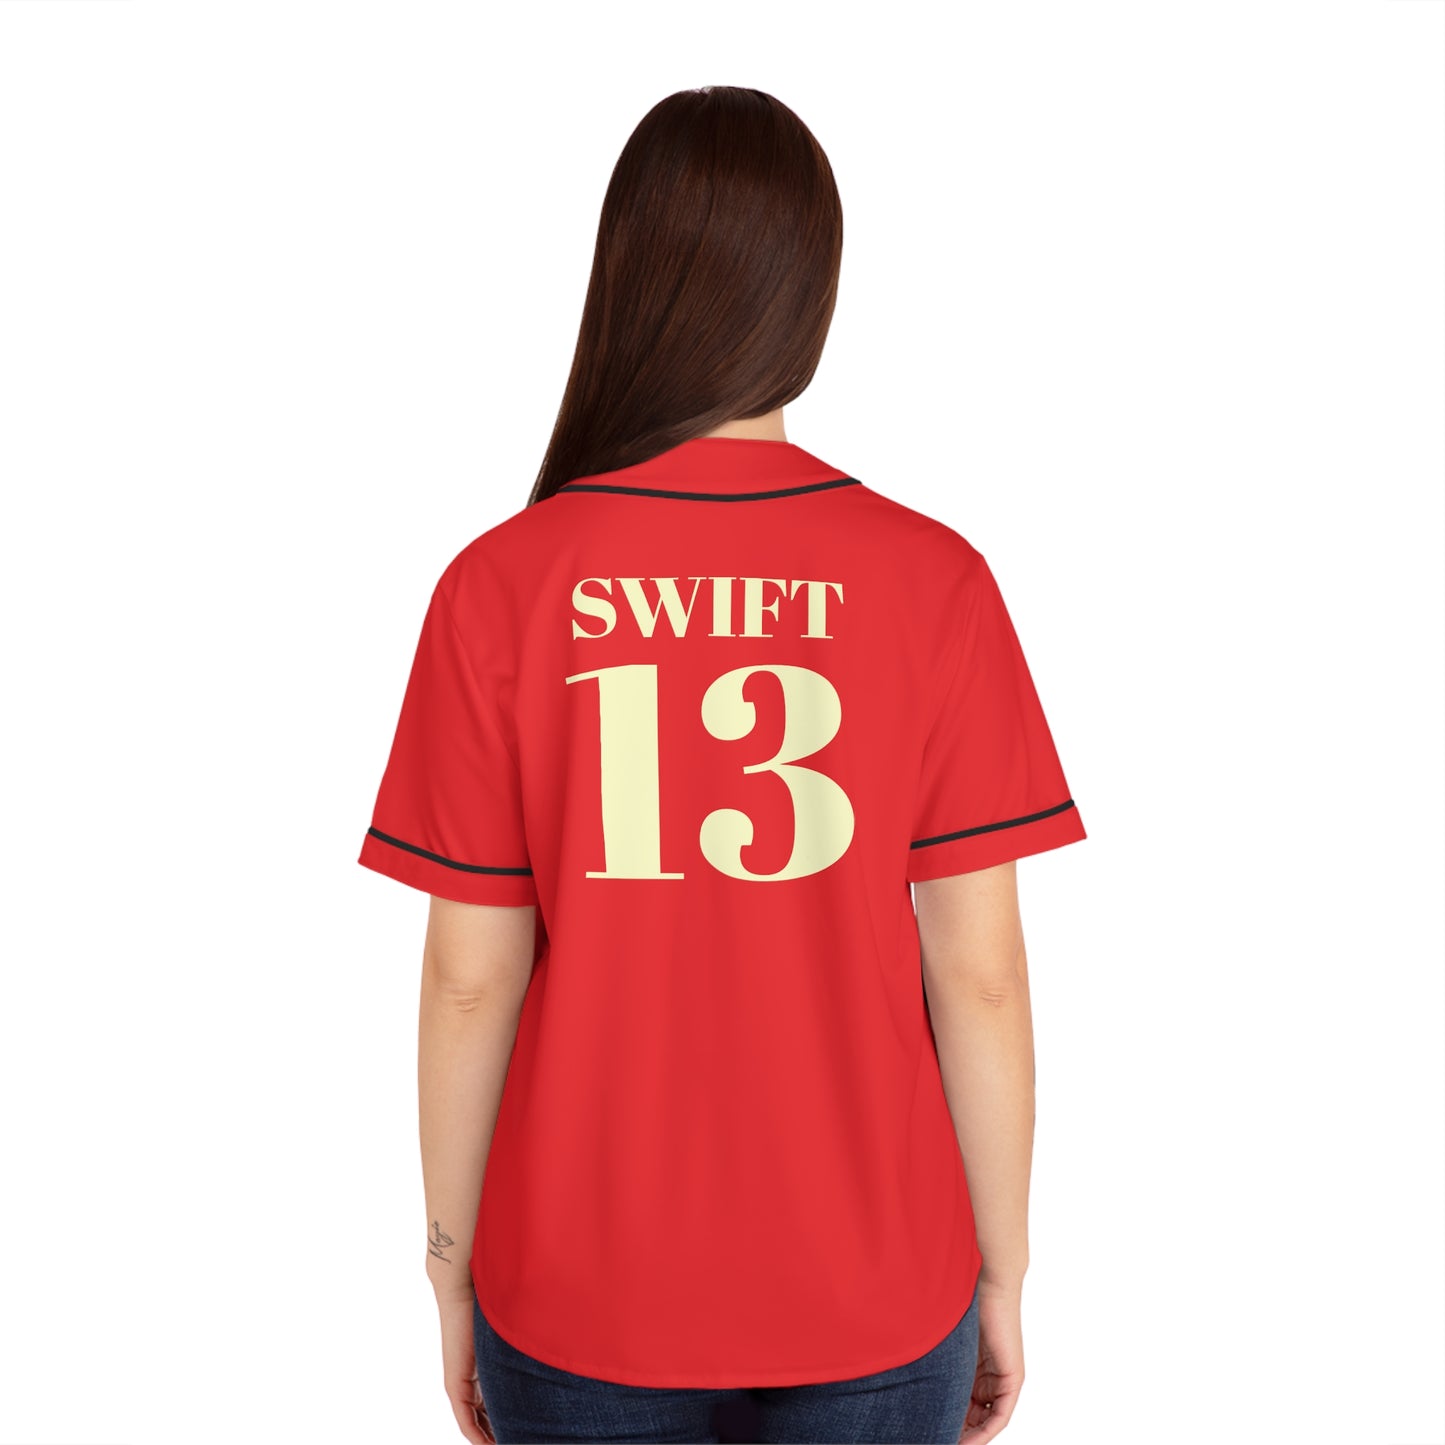 Taylor Swift Go Boyfriend Women's Baseball Jersey